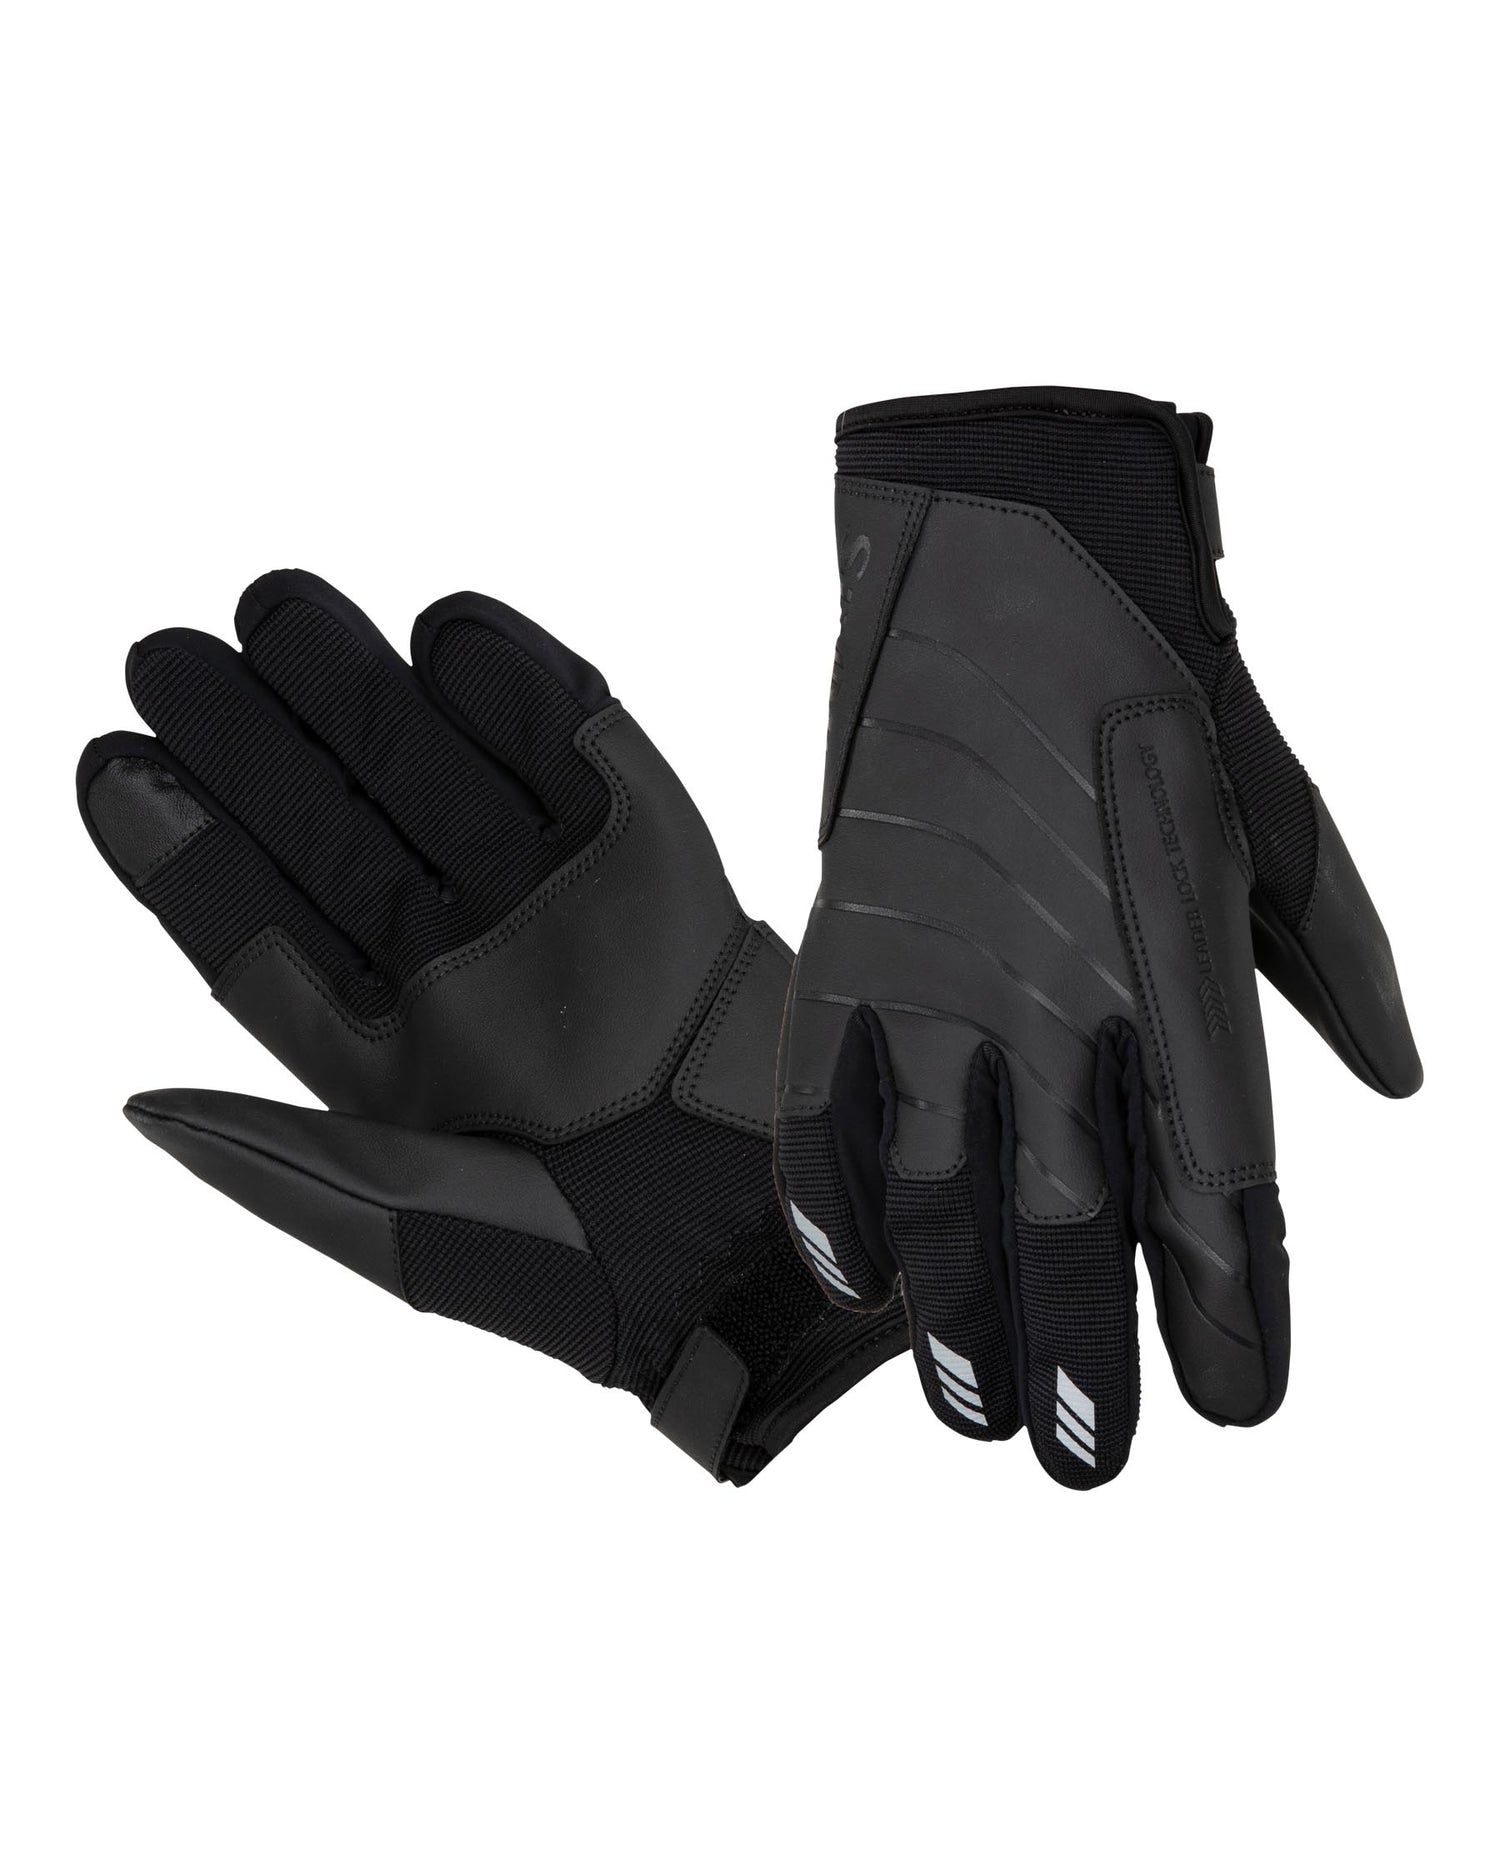 M's Offshore Angler's Glove Black